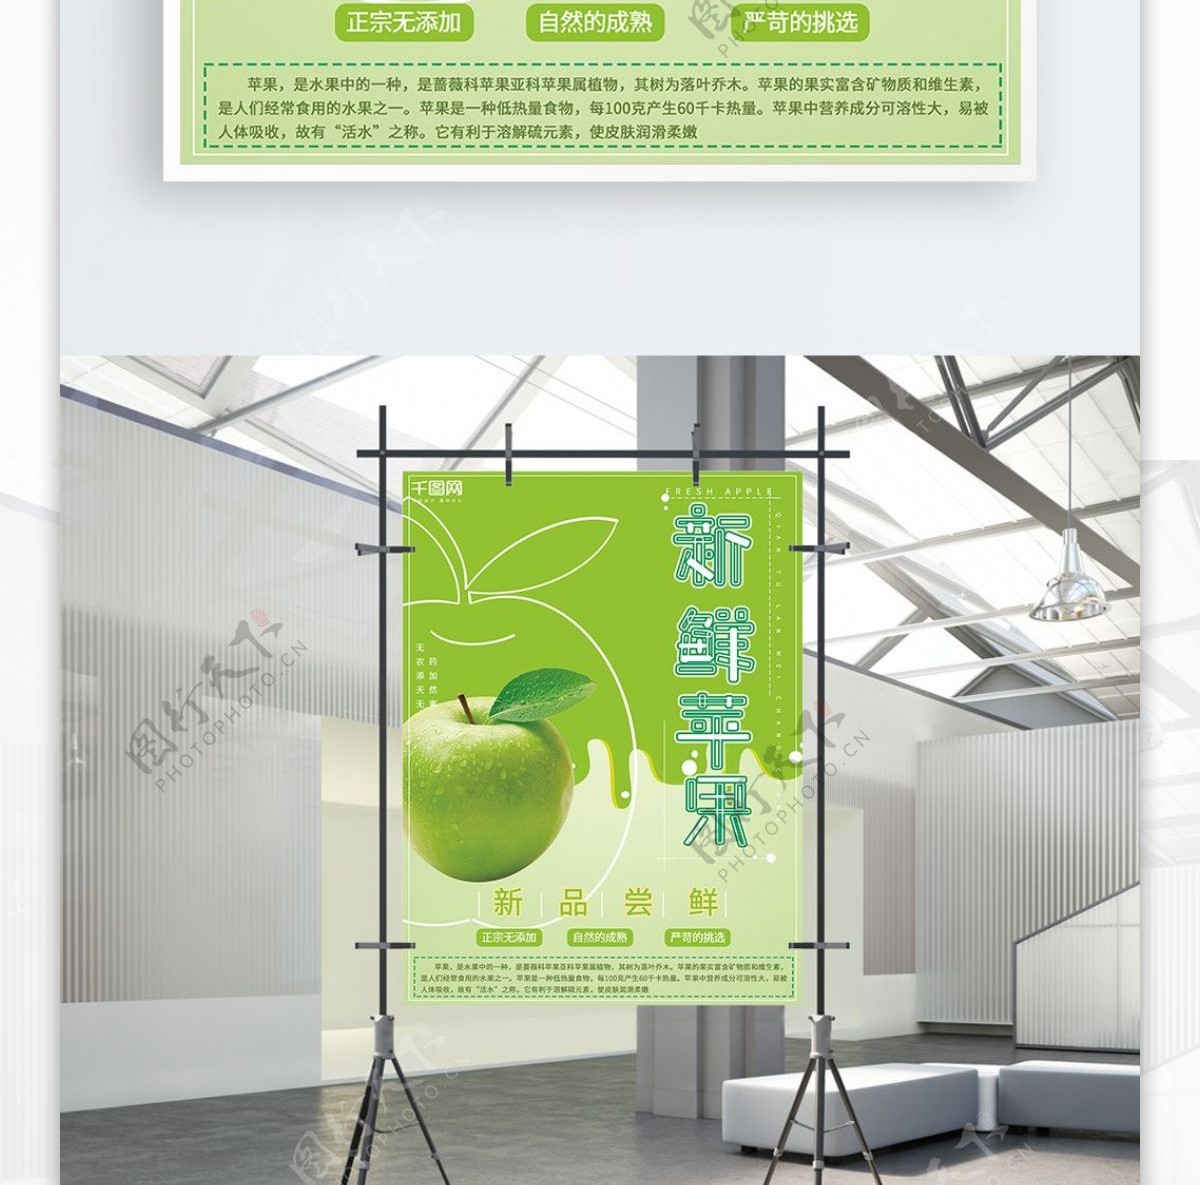 清新简约大气绿色健康水果苹果宣传促销海报